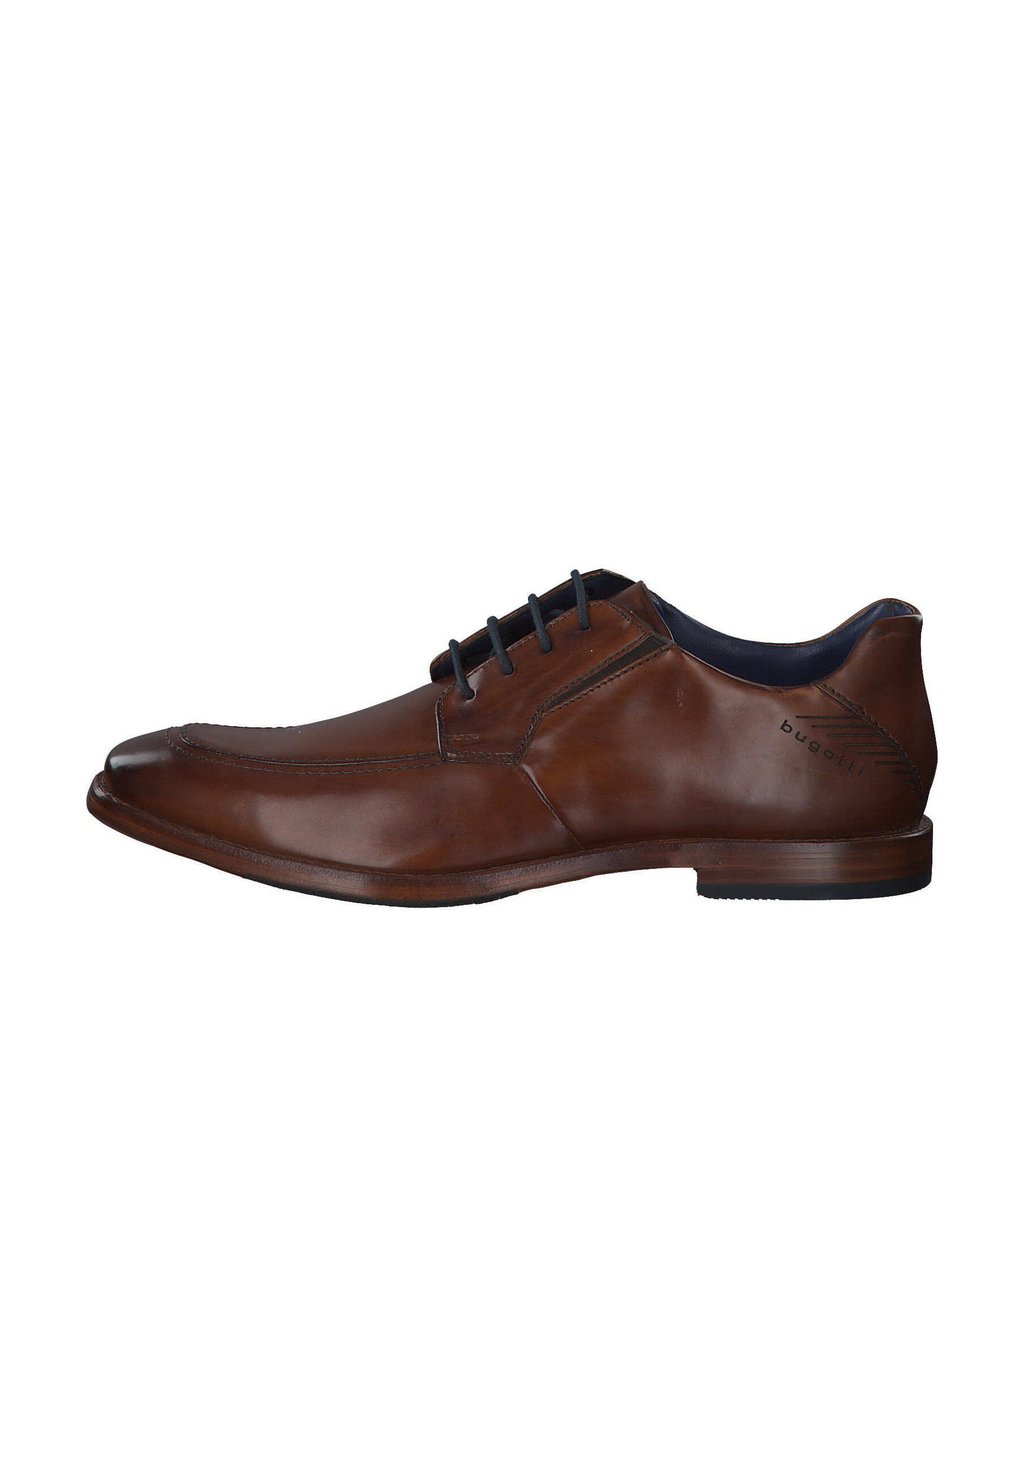 Деловые туфли на шнуровке MANSARO bugatti, цвет cognac деловые туфли на шнуровке bugatti цвет black